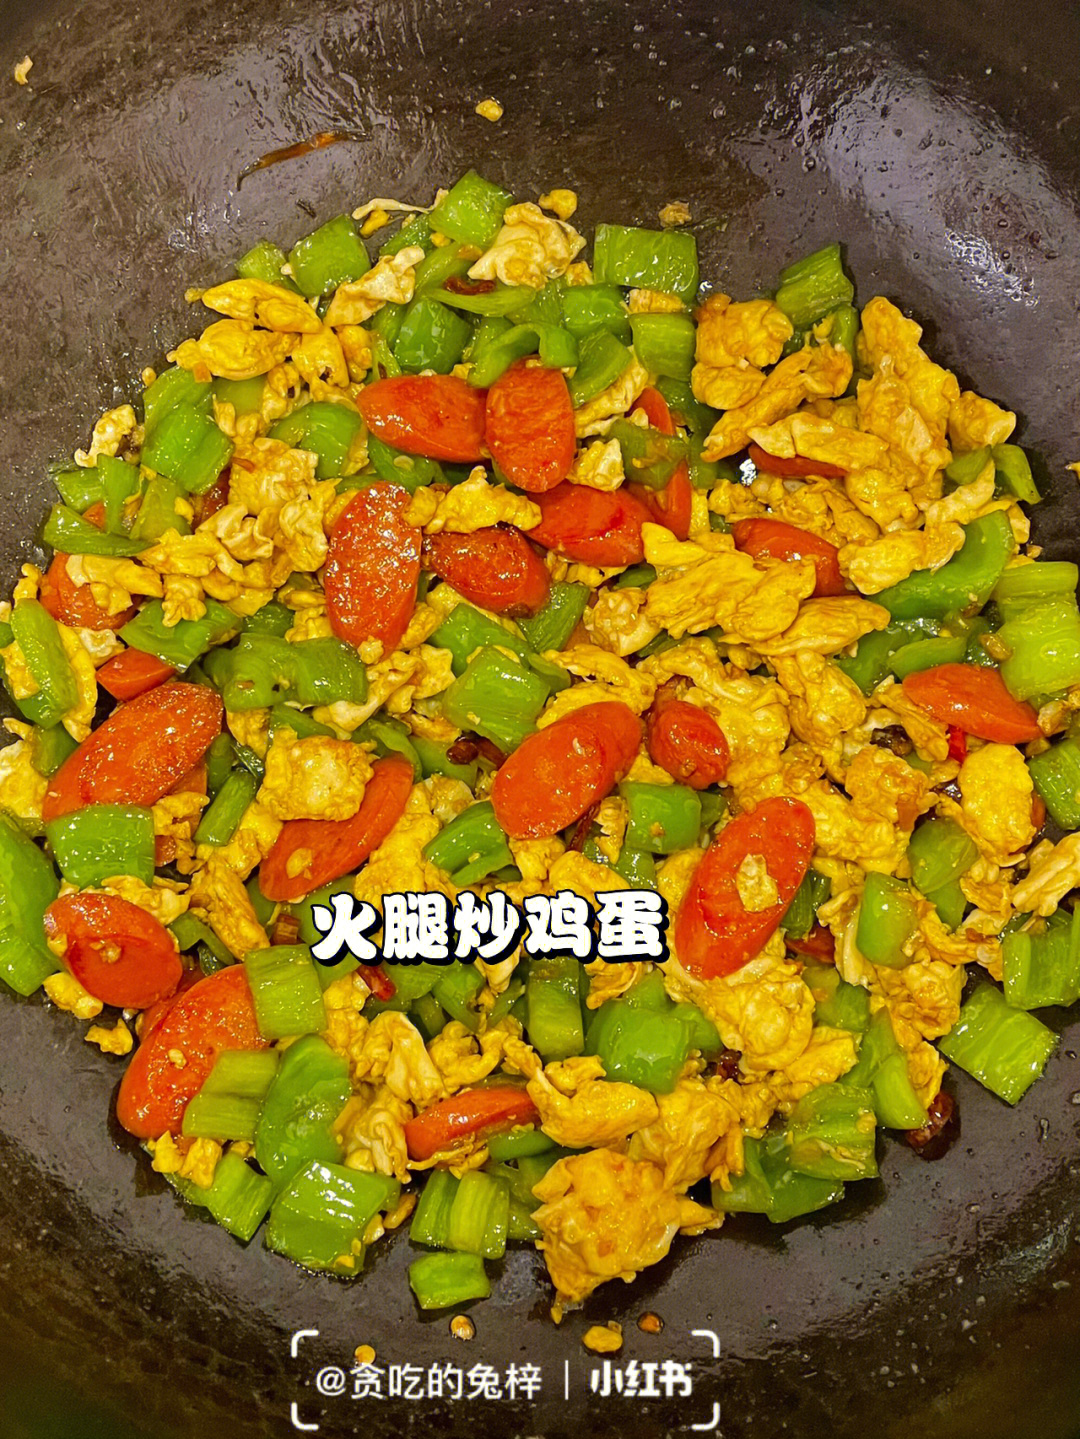 93939399食材:火腿肠,鸡蛋,青椒,蒜末,小米椒99做法:115